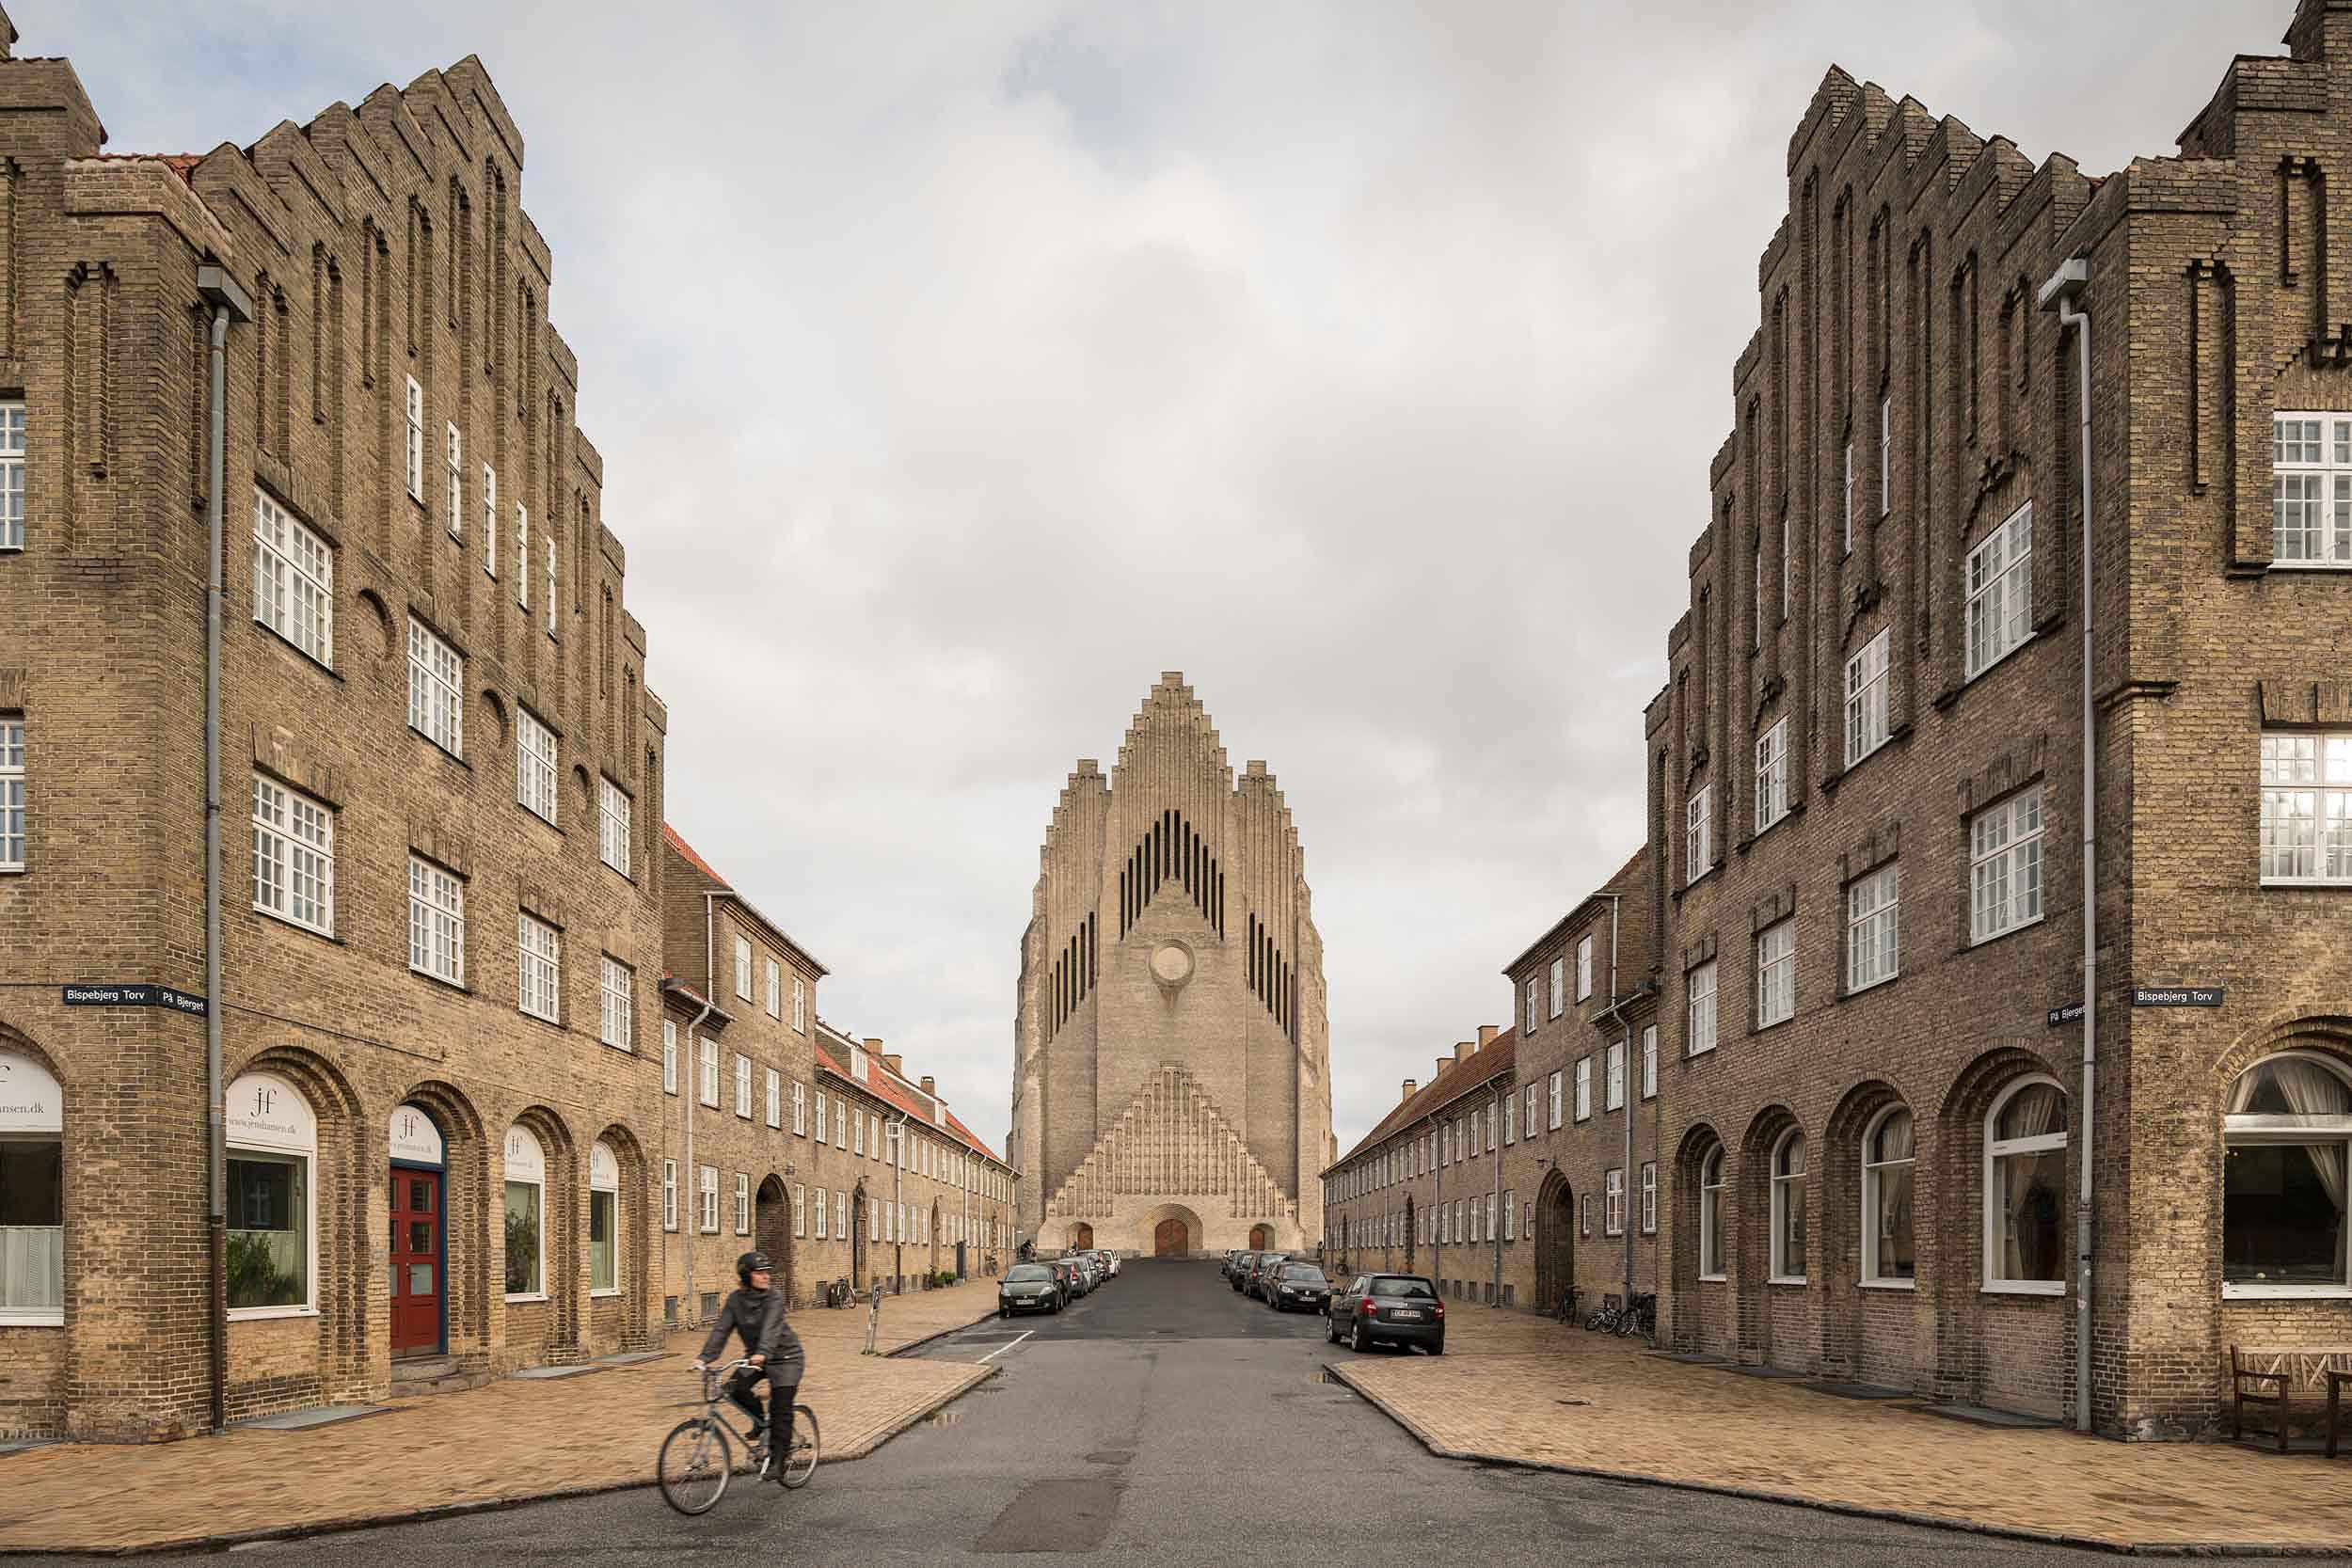 grundvigs-church-architecture-denmark-street-exterior